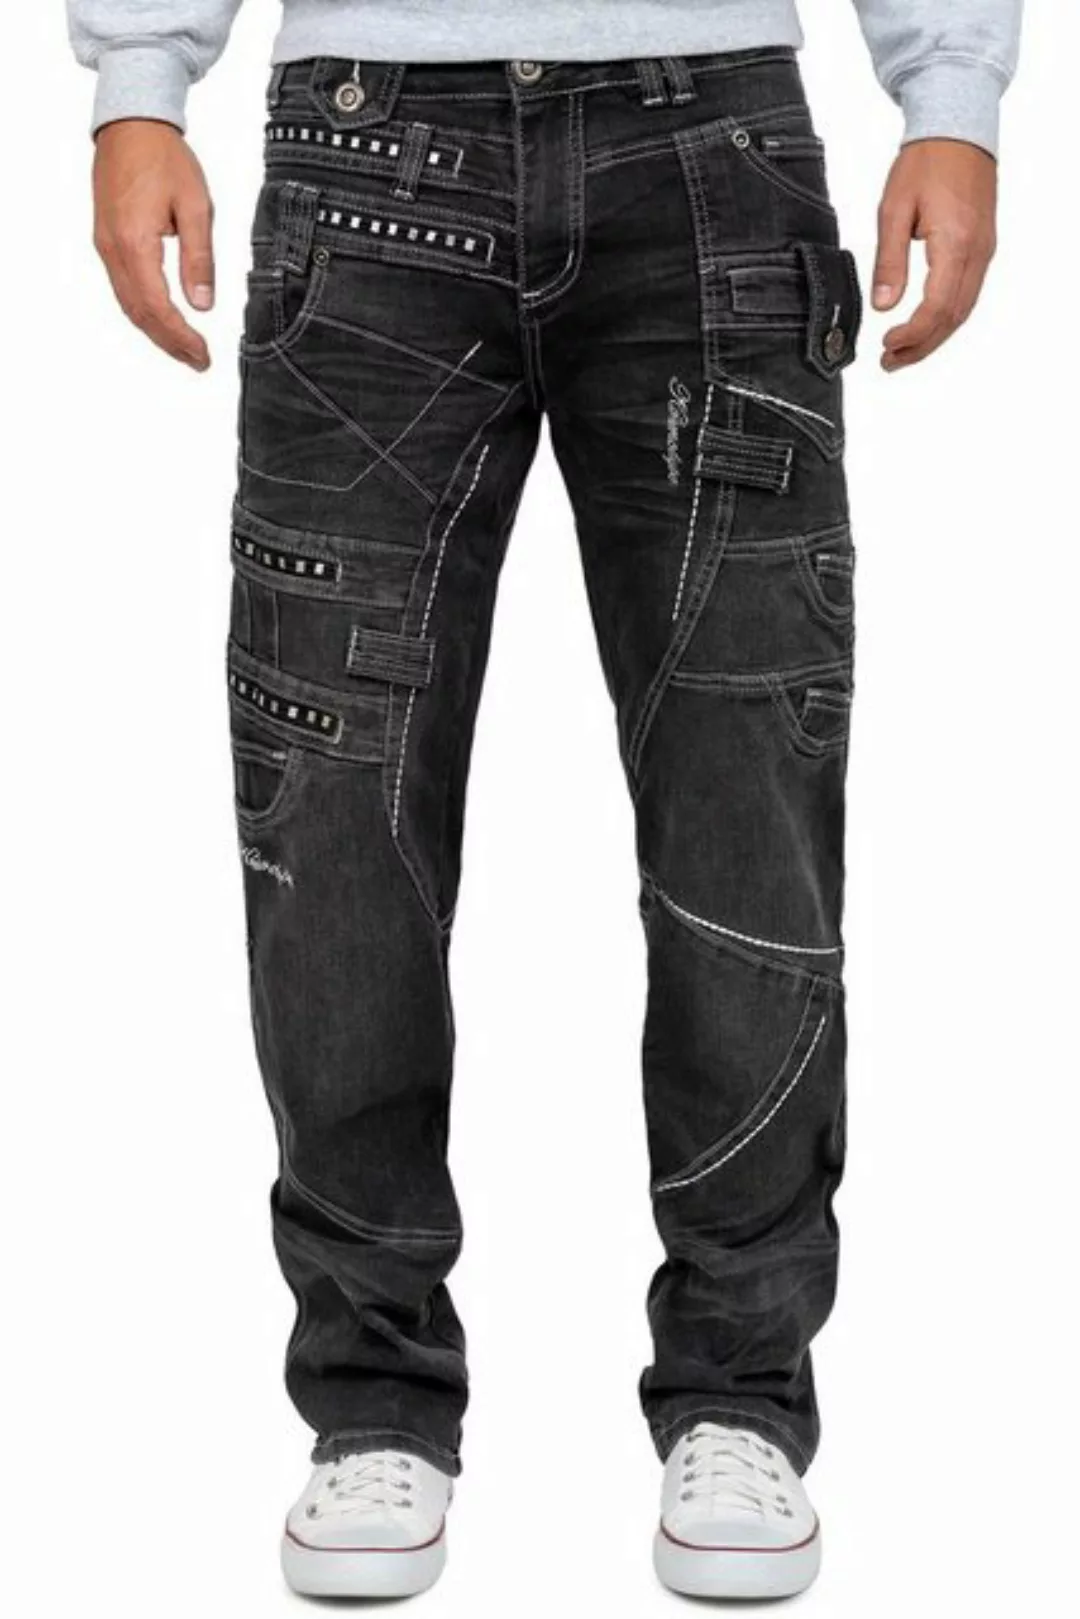 Kosmo Lupo 5-Pocket-Jeans Auffällige Herren Hose BA-KM001-2 Grau W29/L32 (1 günstig online kaufen